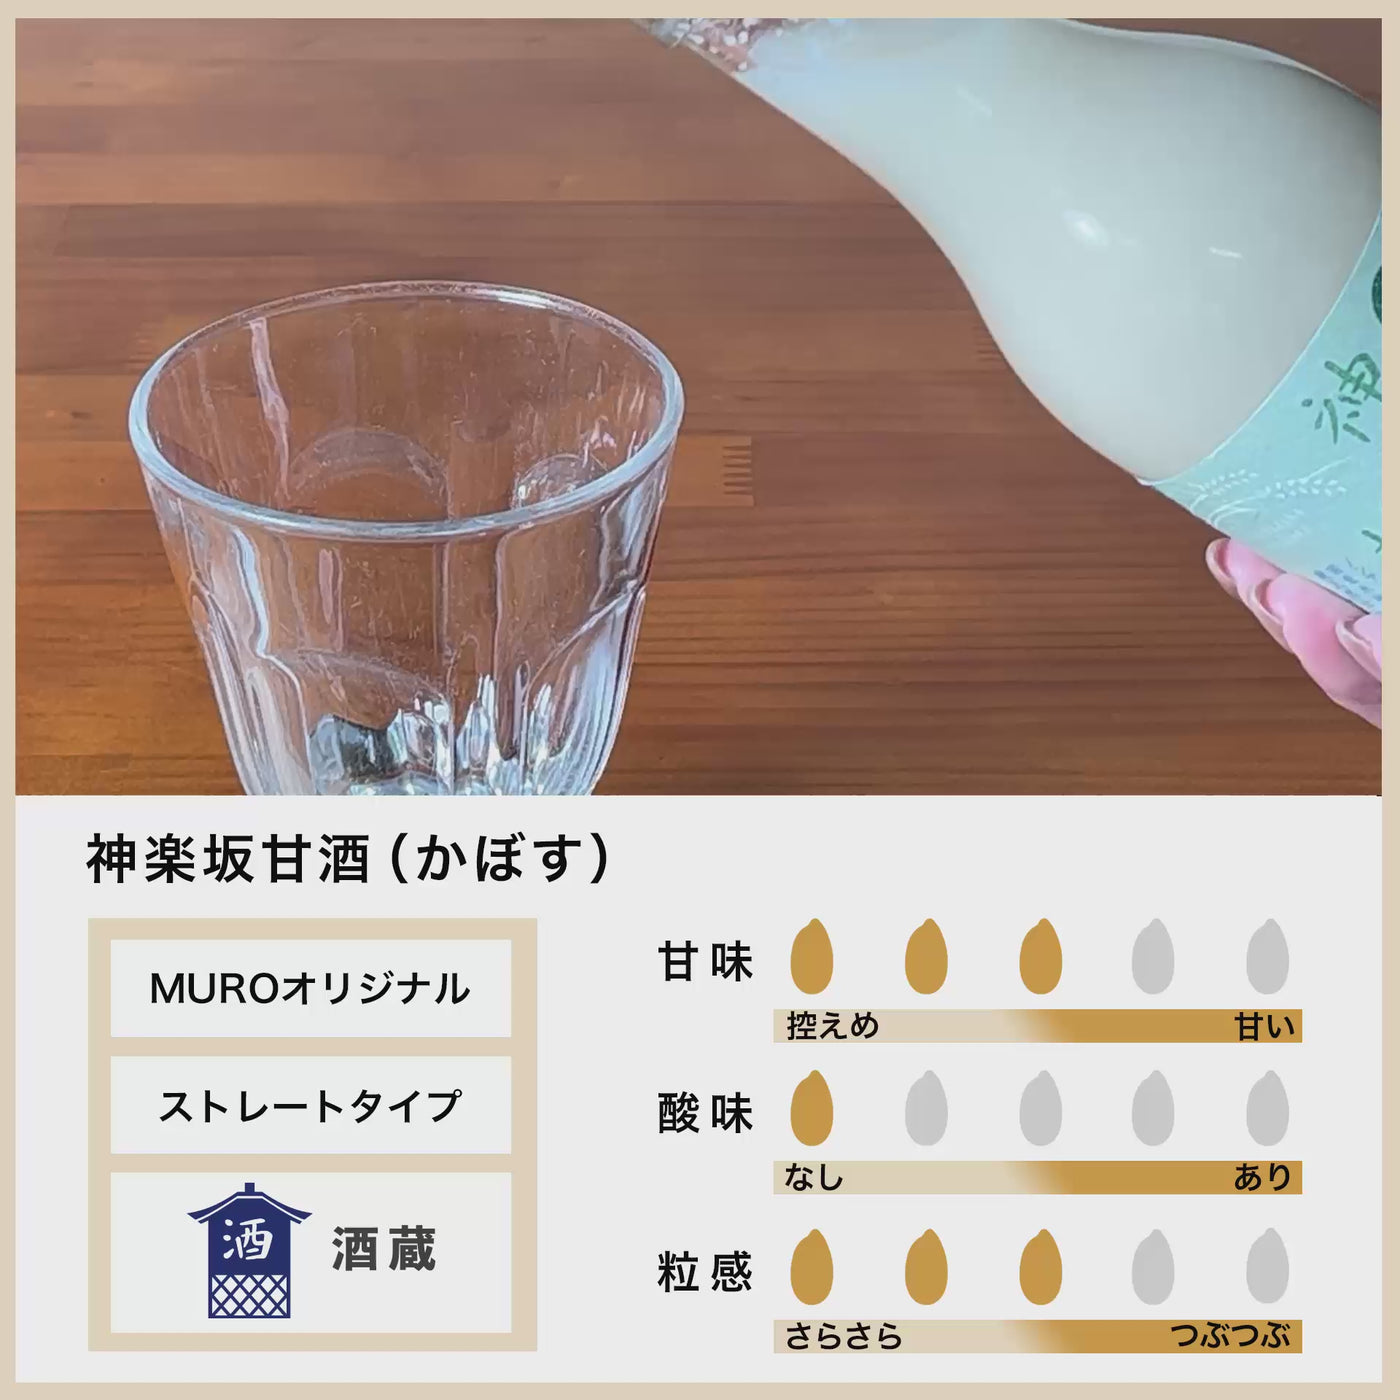 [Bulk purchase] Kagurazaka Amazake Kabosu 180ml x 20 bottles set